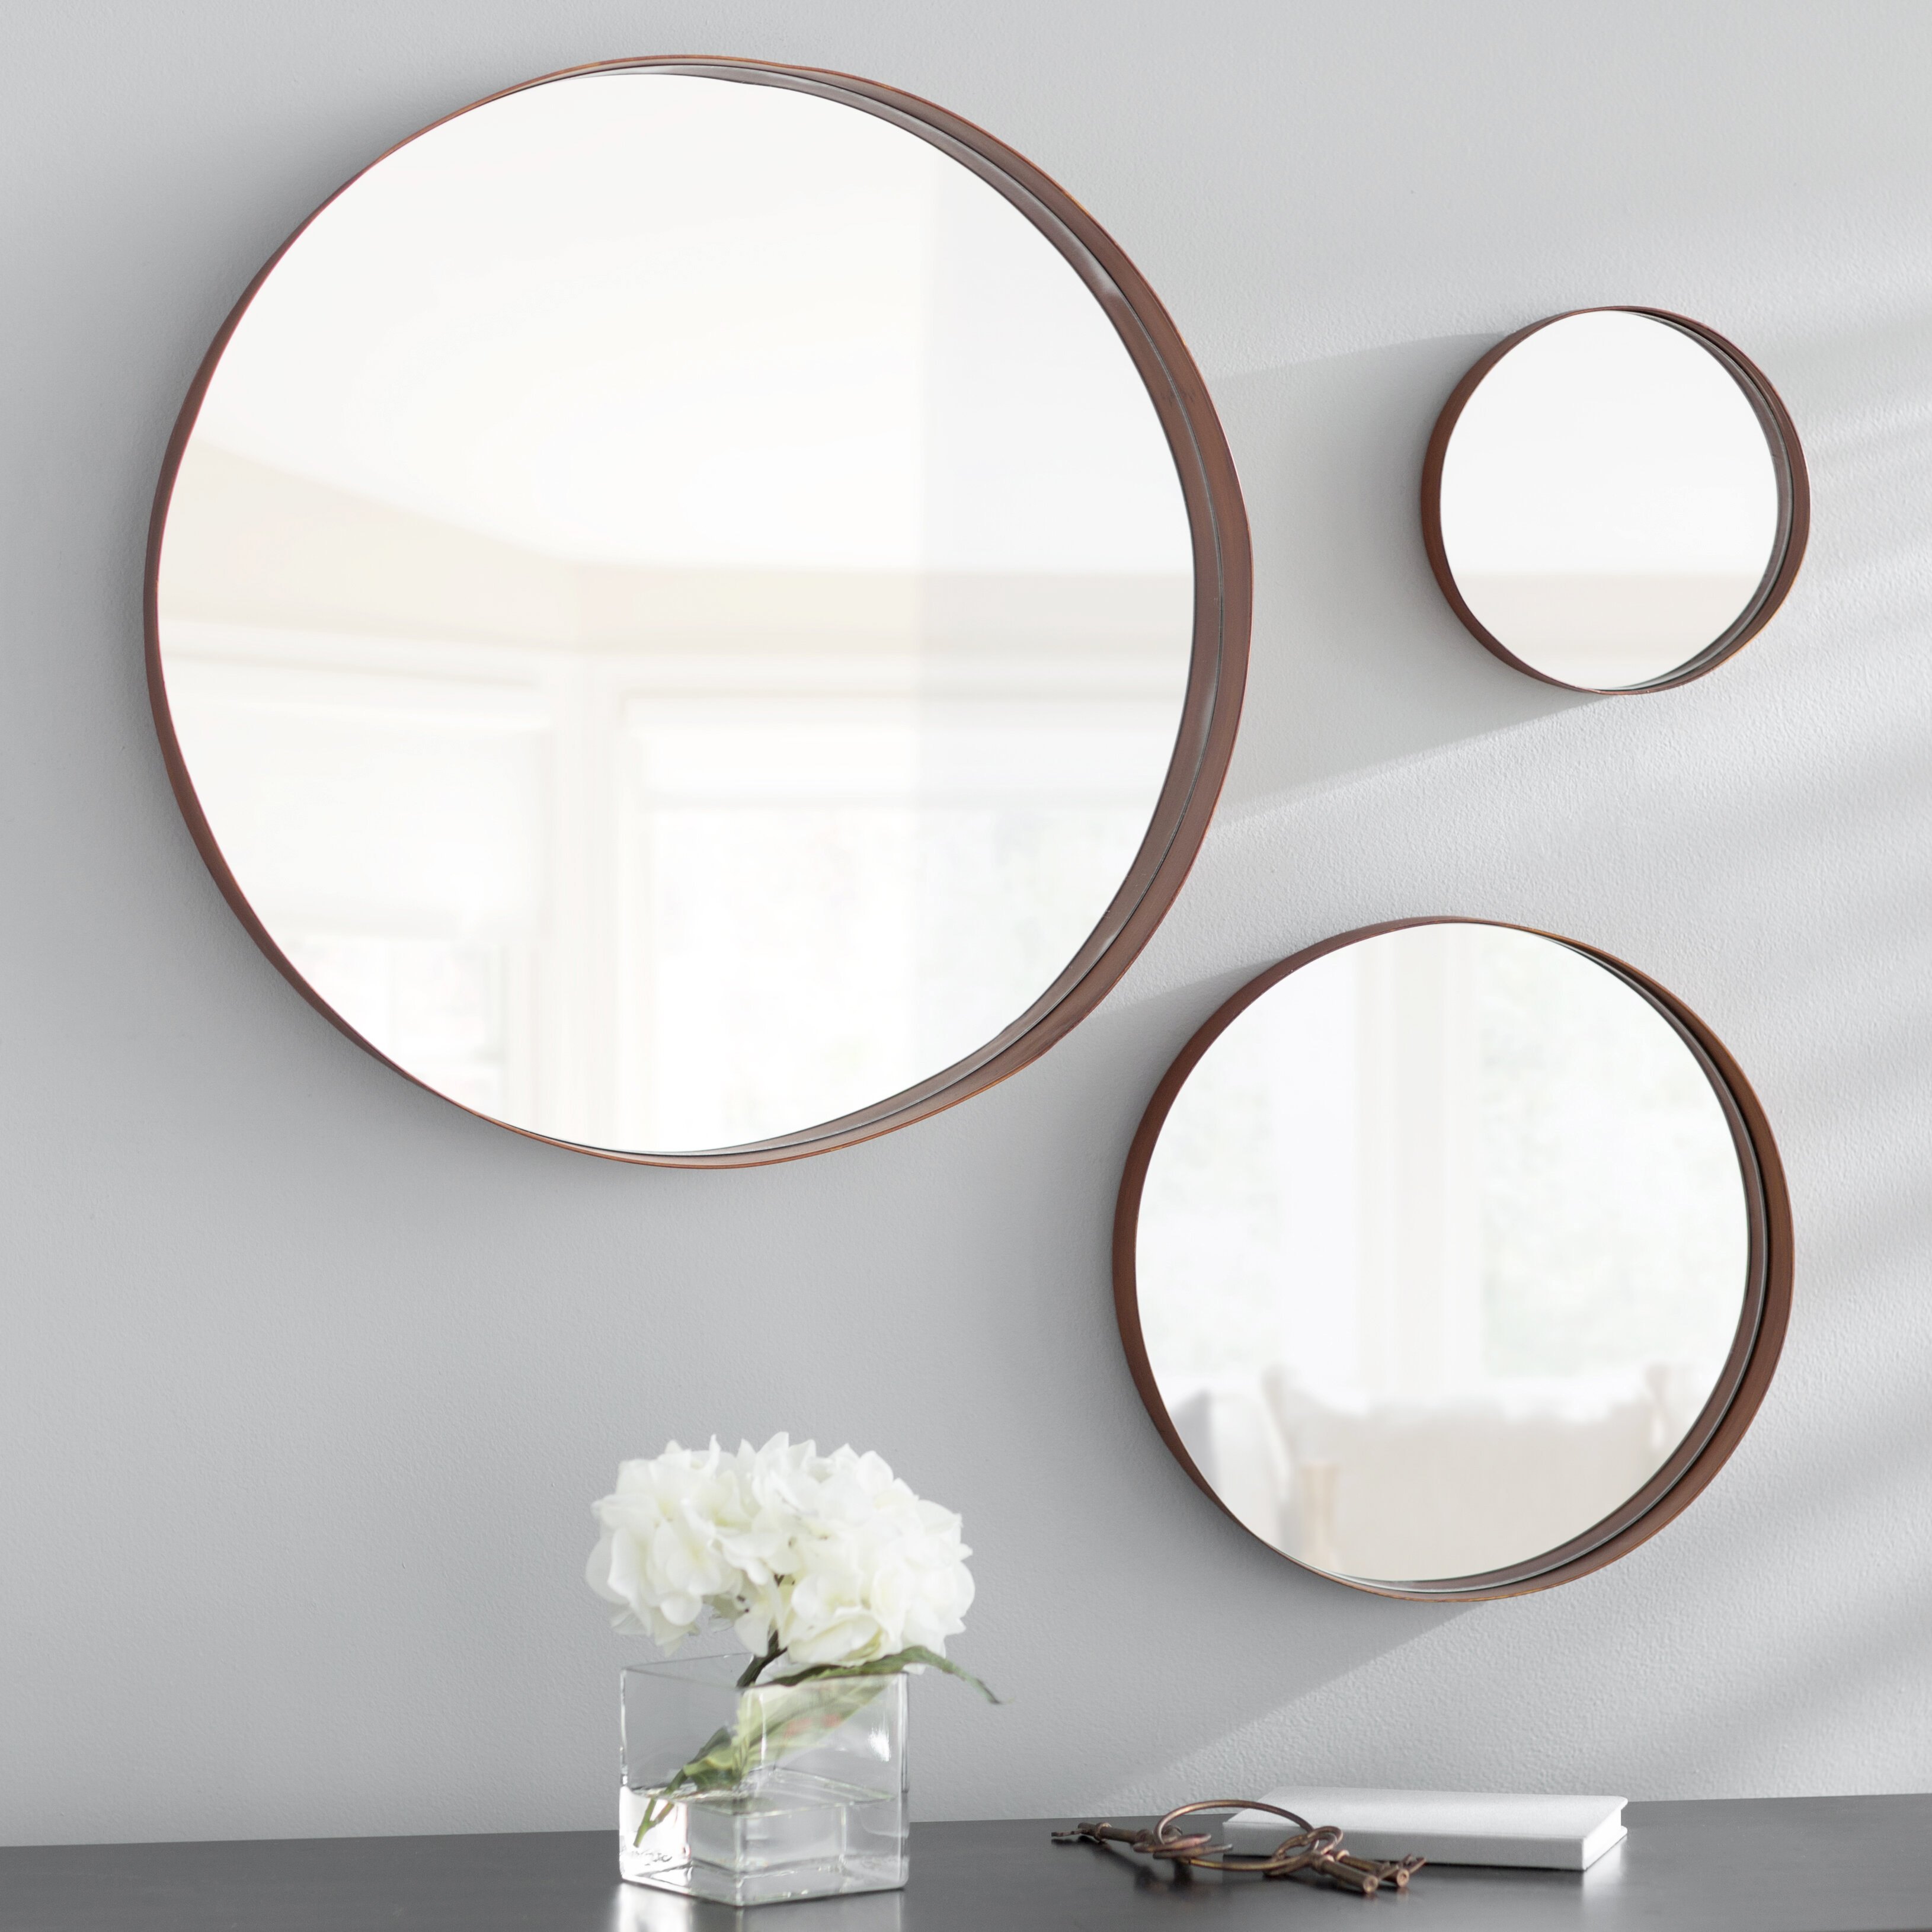 Купить комплект зеркал. Круглое зеркало икеа 110 см. Зеркало икеа круглое настенное. Зеркало Burgio Mirror. Круглое зеркало в интерьере.